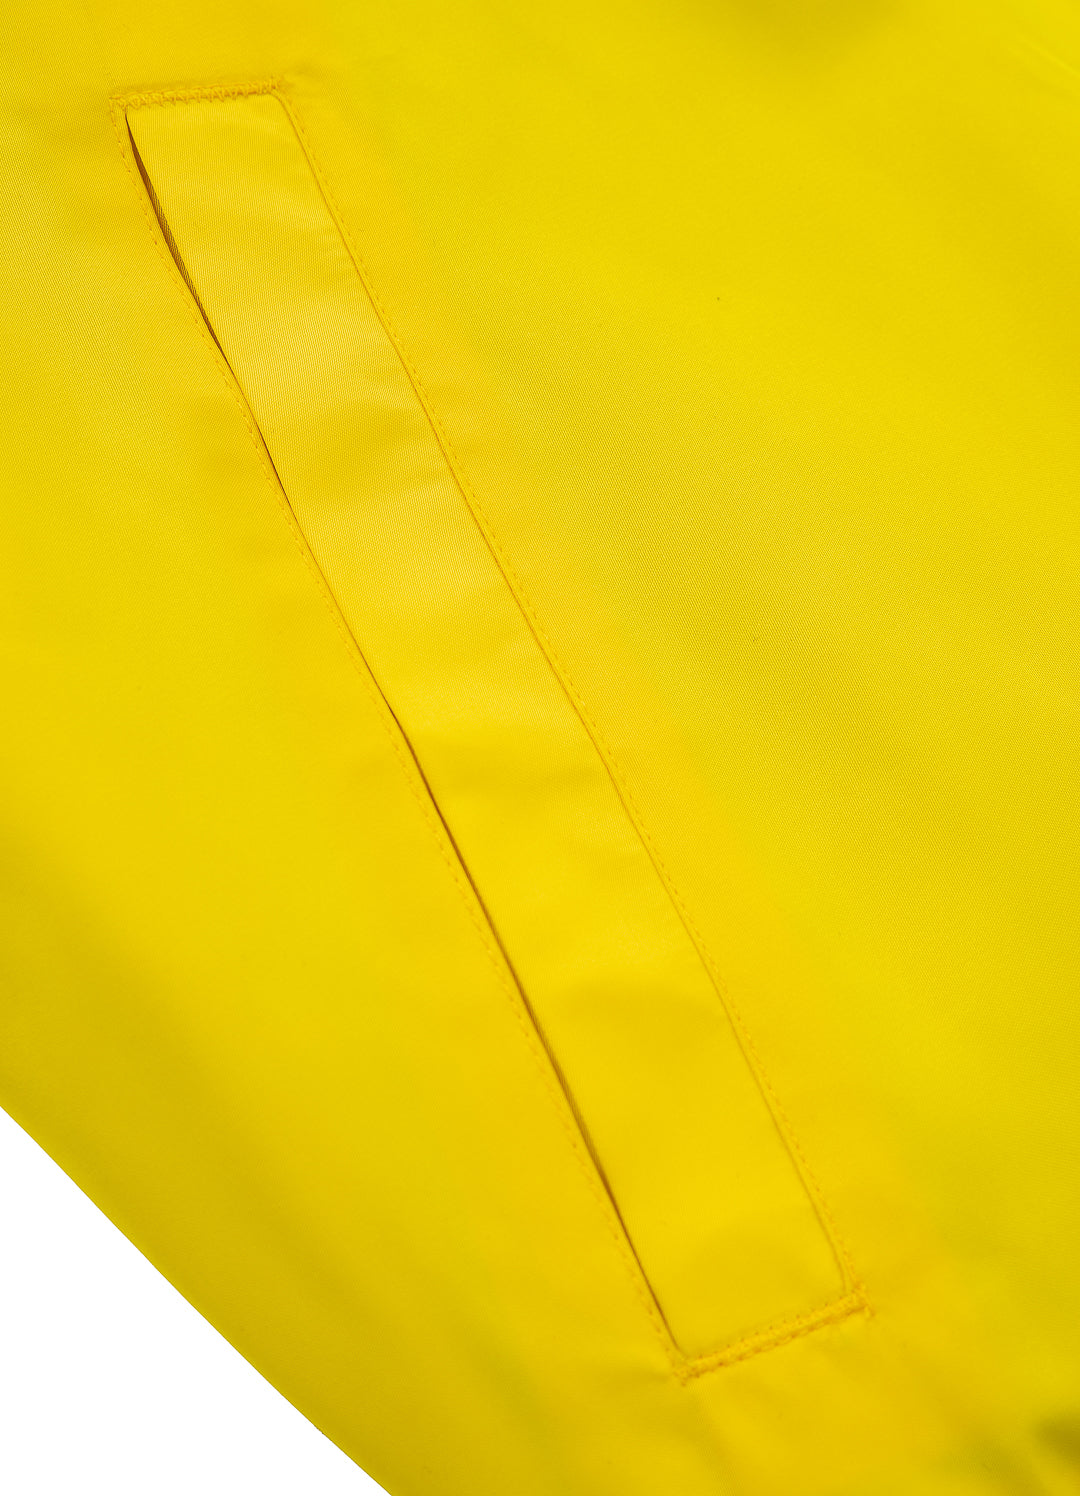 Reversible Jacket BROADWAY Yellow - Pitbull West Coast International Store 